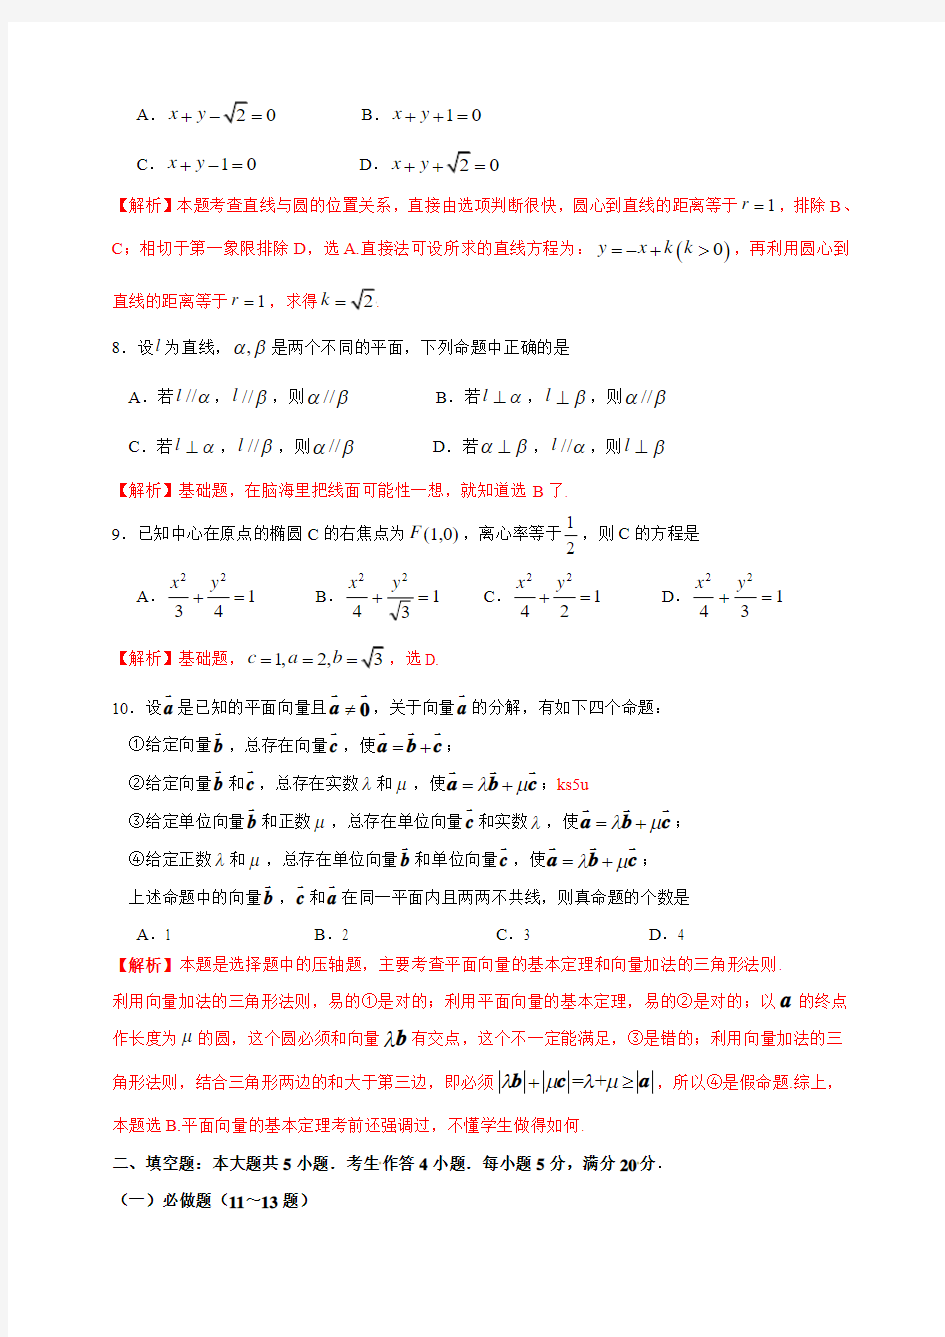 2013年高考真题——文科数学(广东卷A)含答案